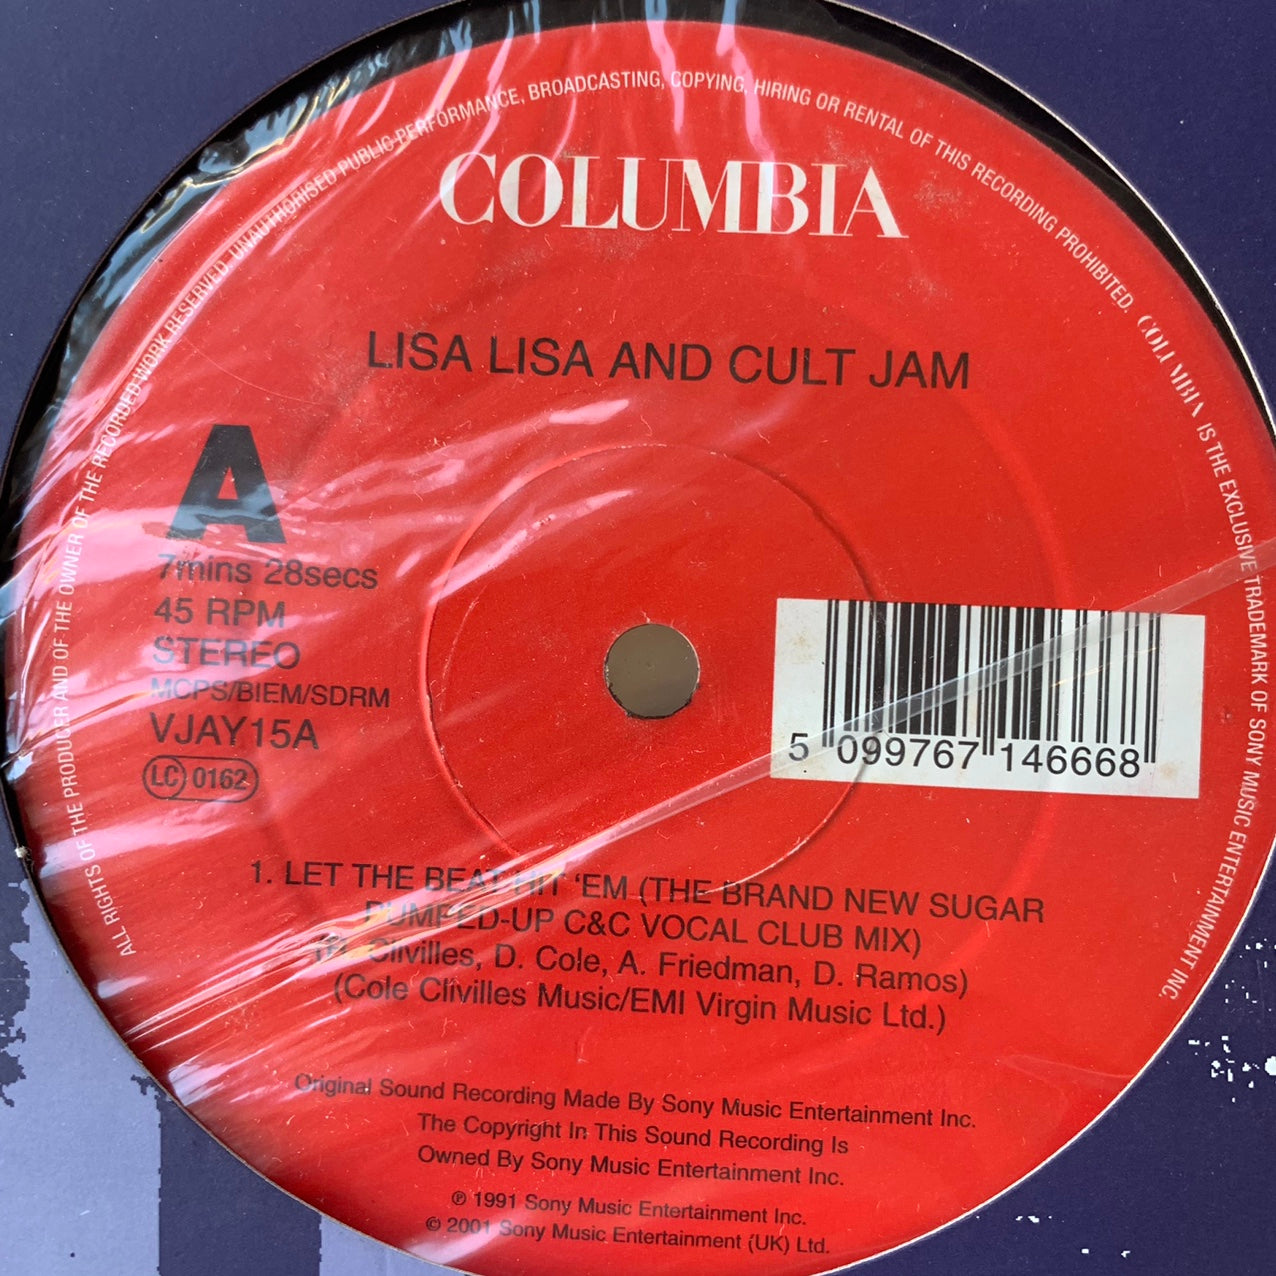 Lisa Lisa And Cult Jam “Let The Beat Hit Em” / “I Wonder If I Take You Home” 2 Track 12inch Vinyl